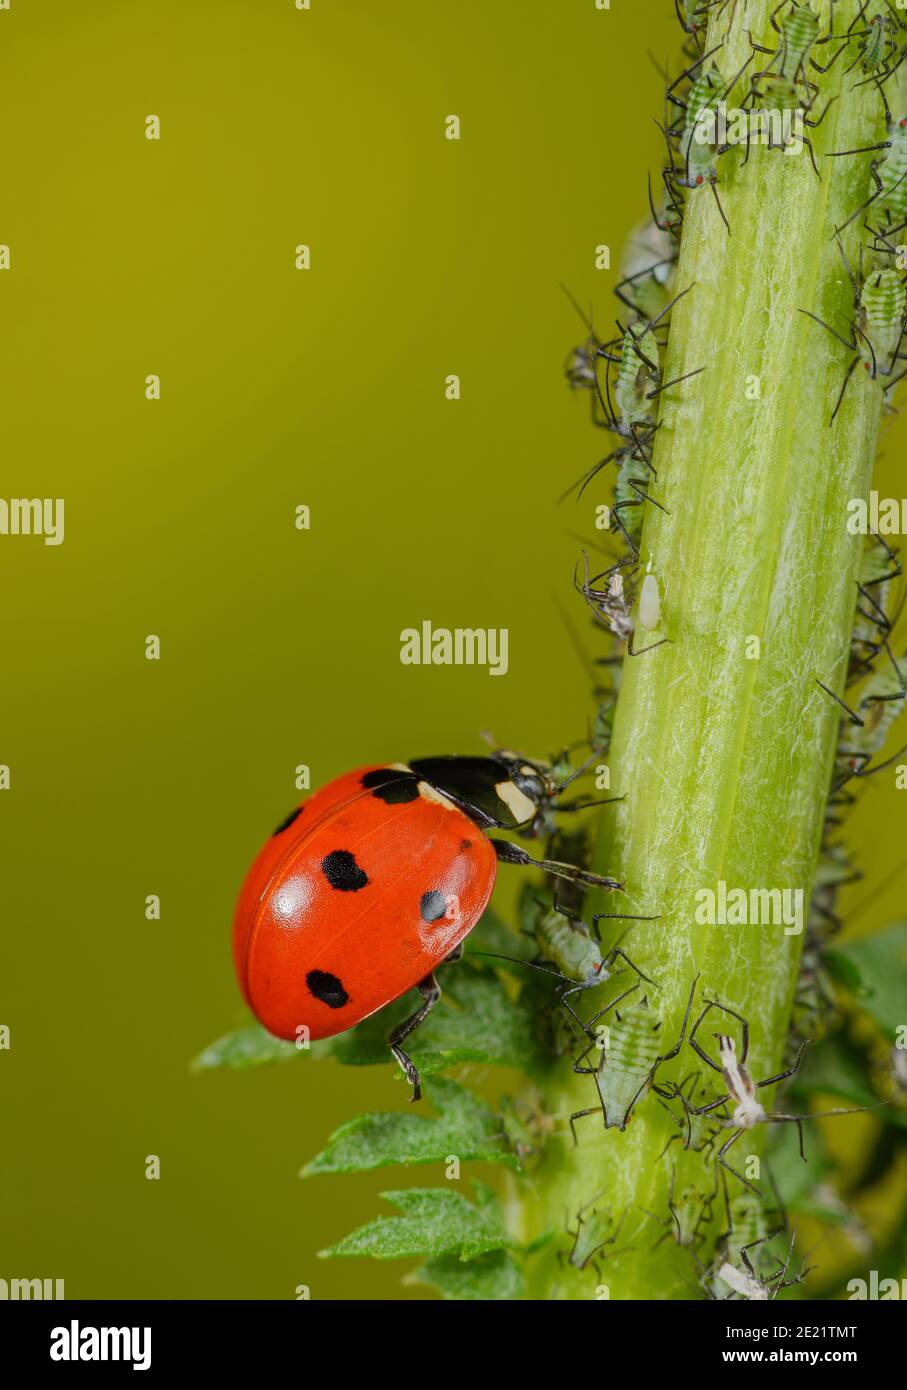 Ladybird mange un puceron Banque D'Images